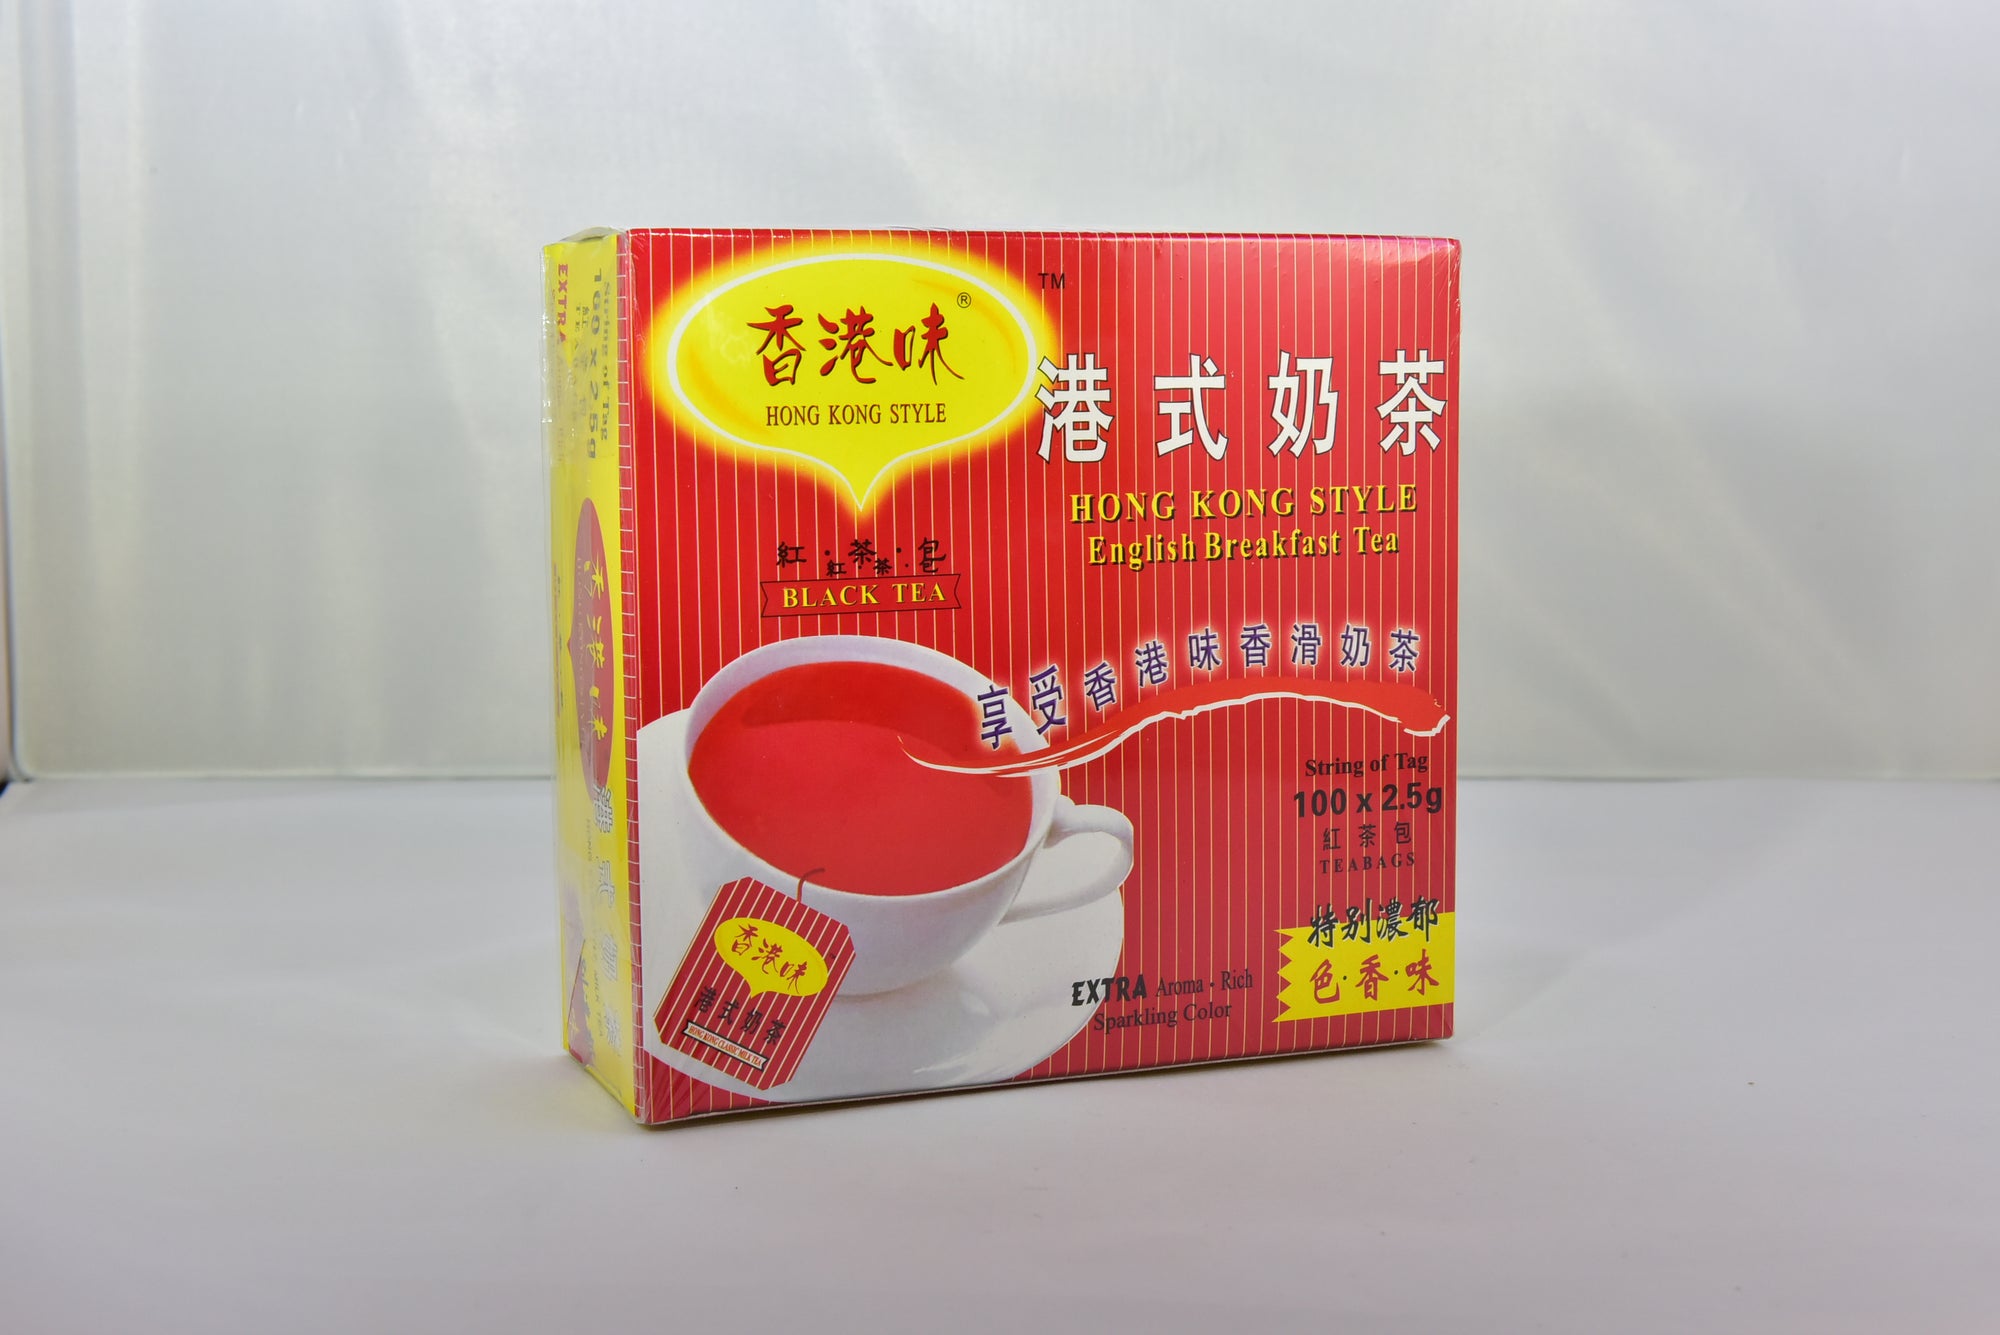 Hong Kong Style Black Tea